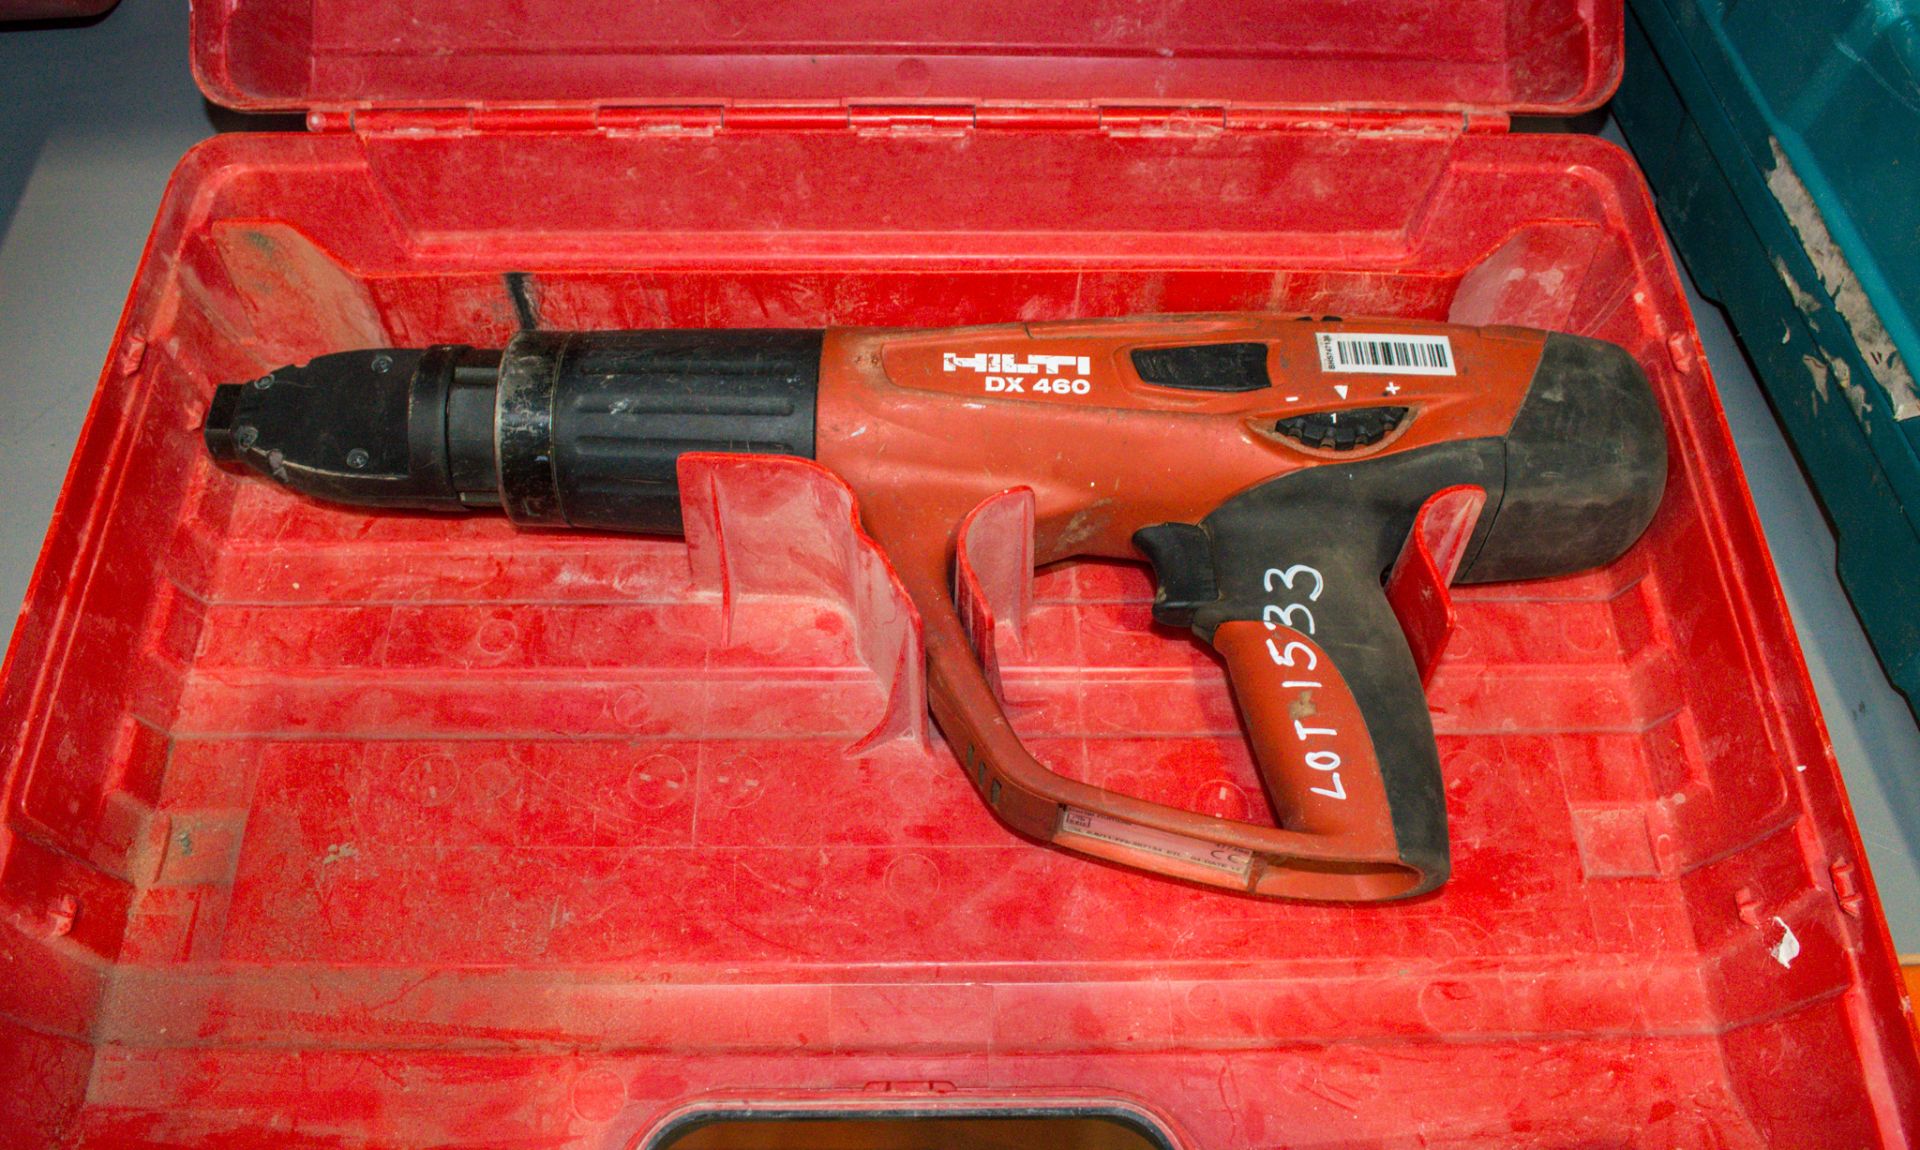 Hilti DX460 cordless nail gun c/w carry case ** No battery ** 1411-0984